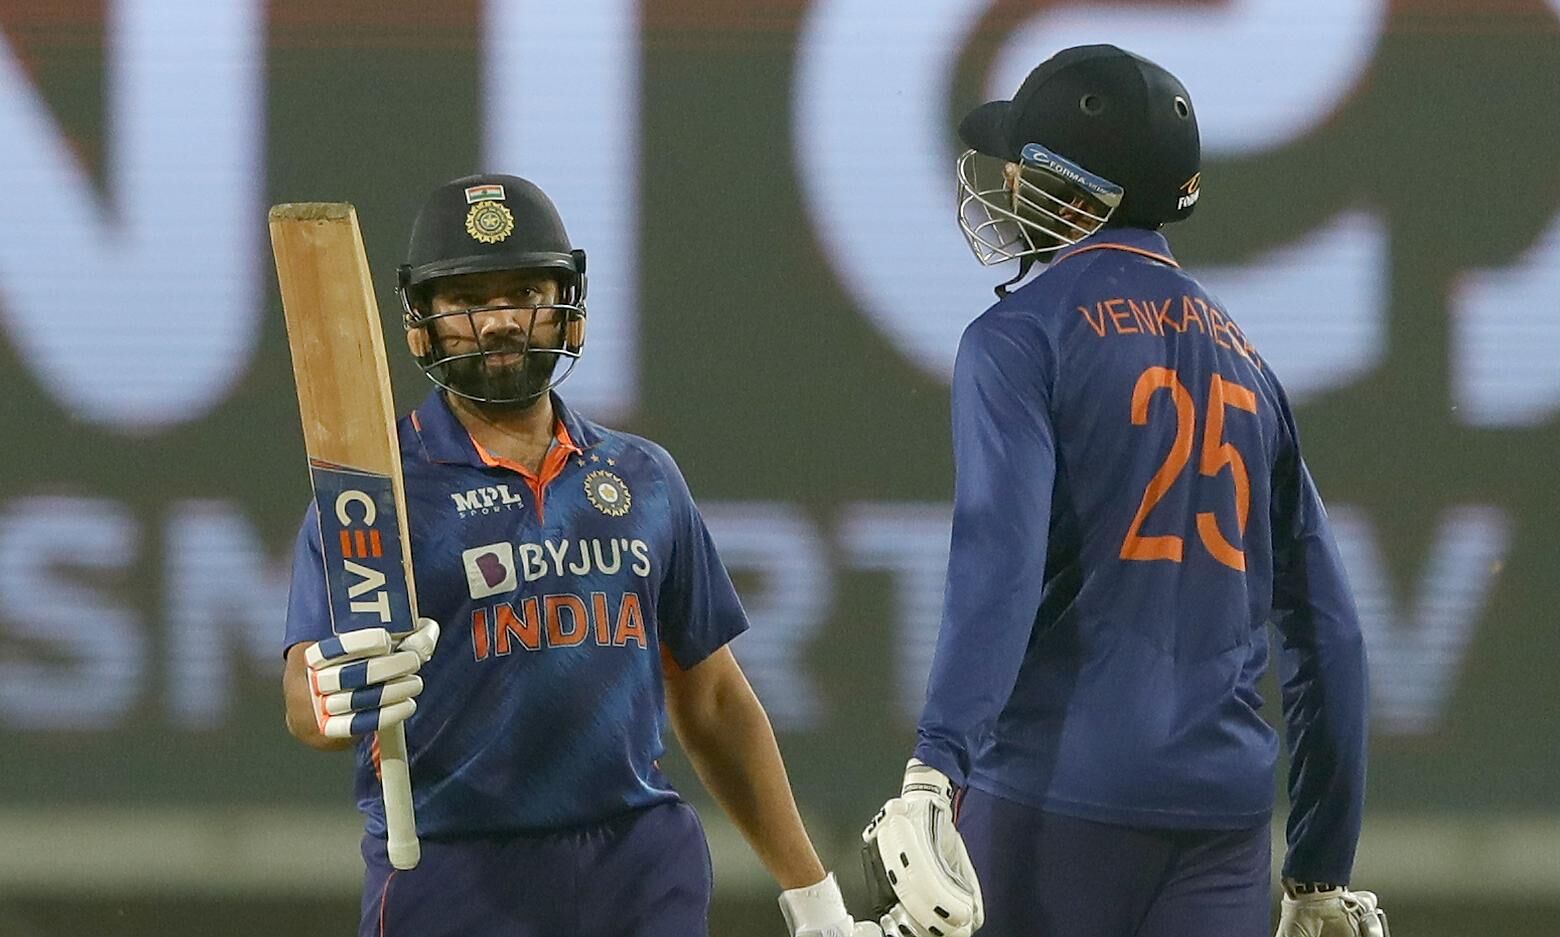 भारत ने जीता दूसरा टी-20, न्यूजीलैंड को 7 विकेट से हराया